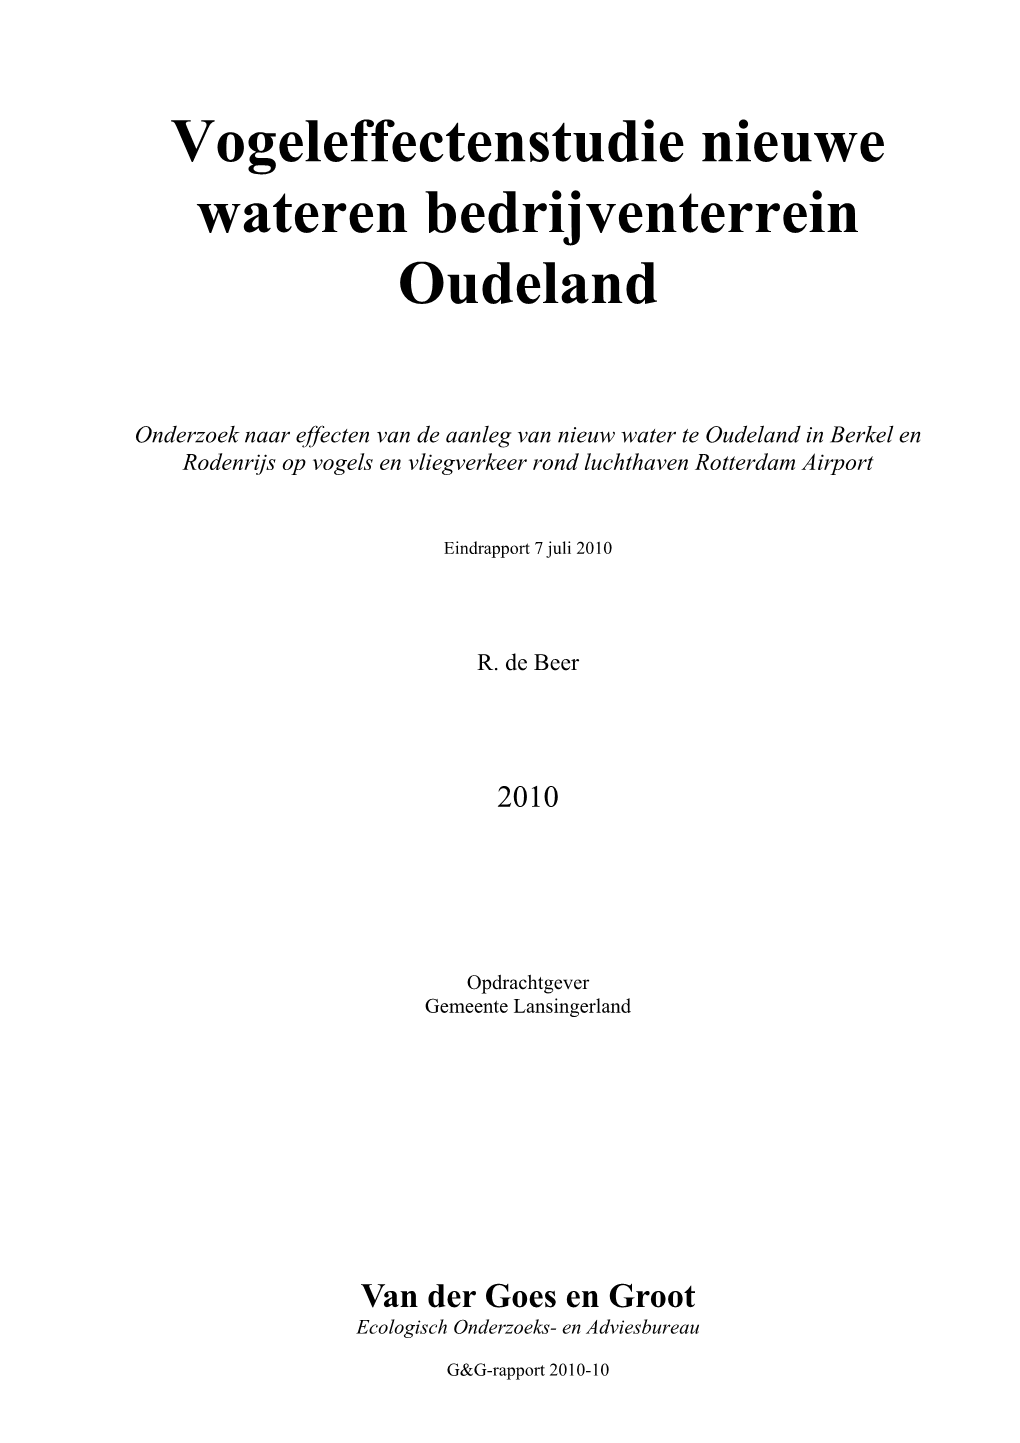 Vogeleffectenstudie Nieuwe Wateren Bedrijventerrein Oudeland